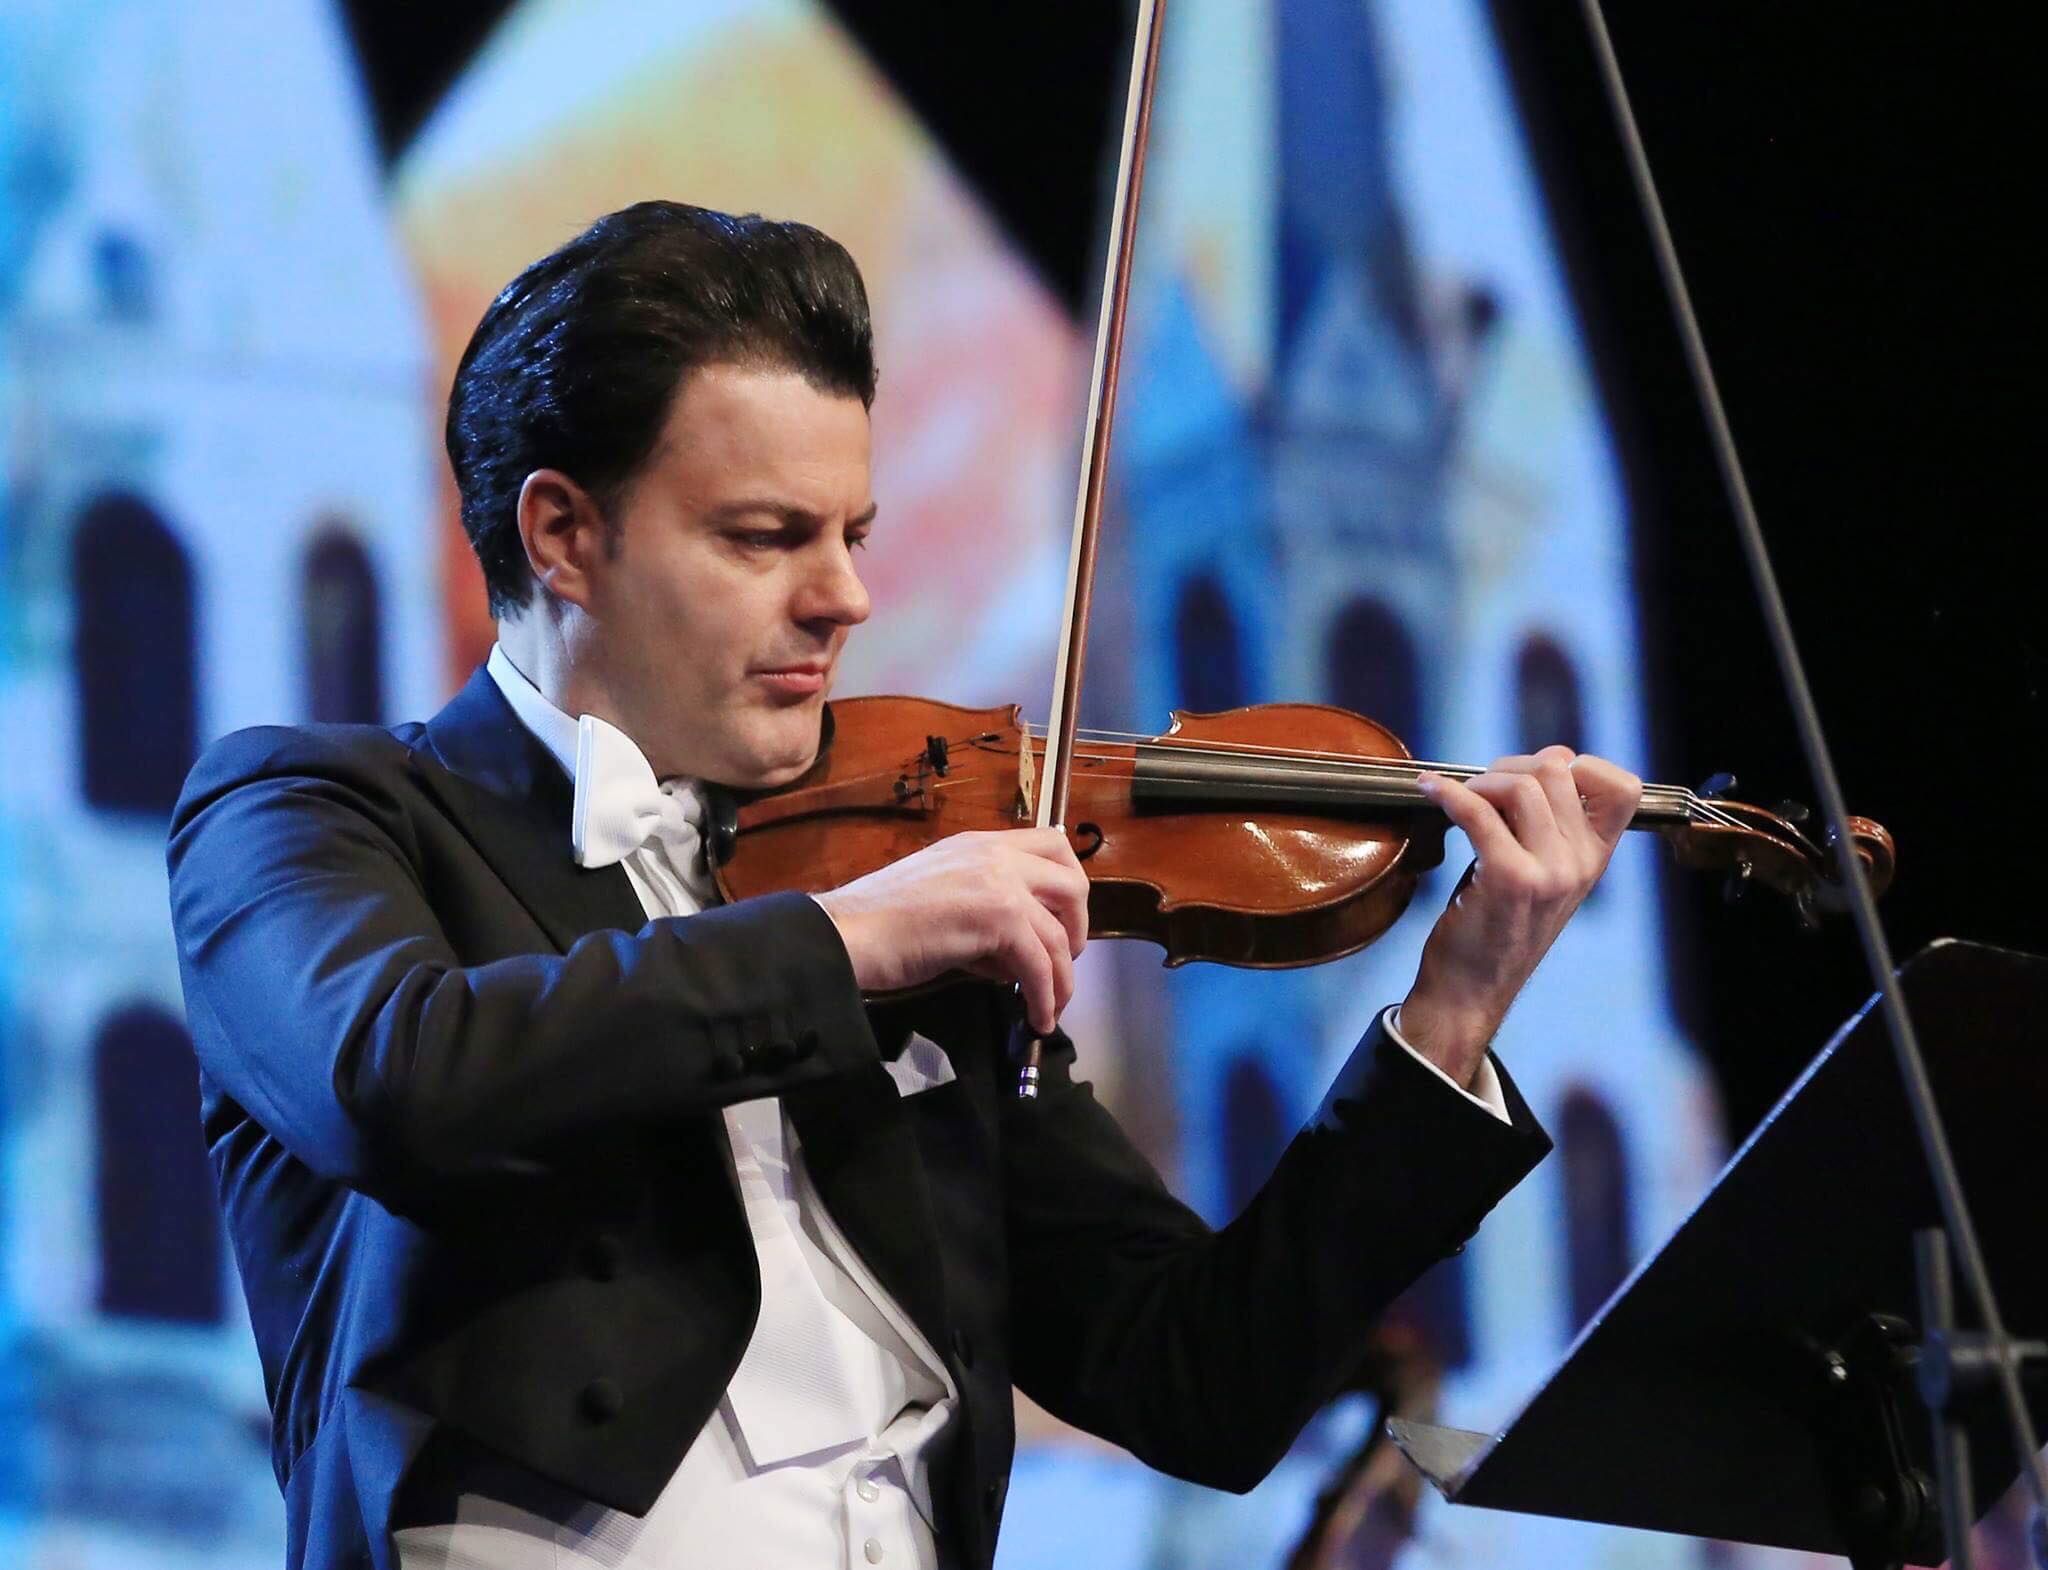 Violinisti shqiptar, Shkëlzen Doli, dekorohet nga presidenti i Austrisë